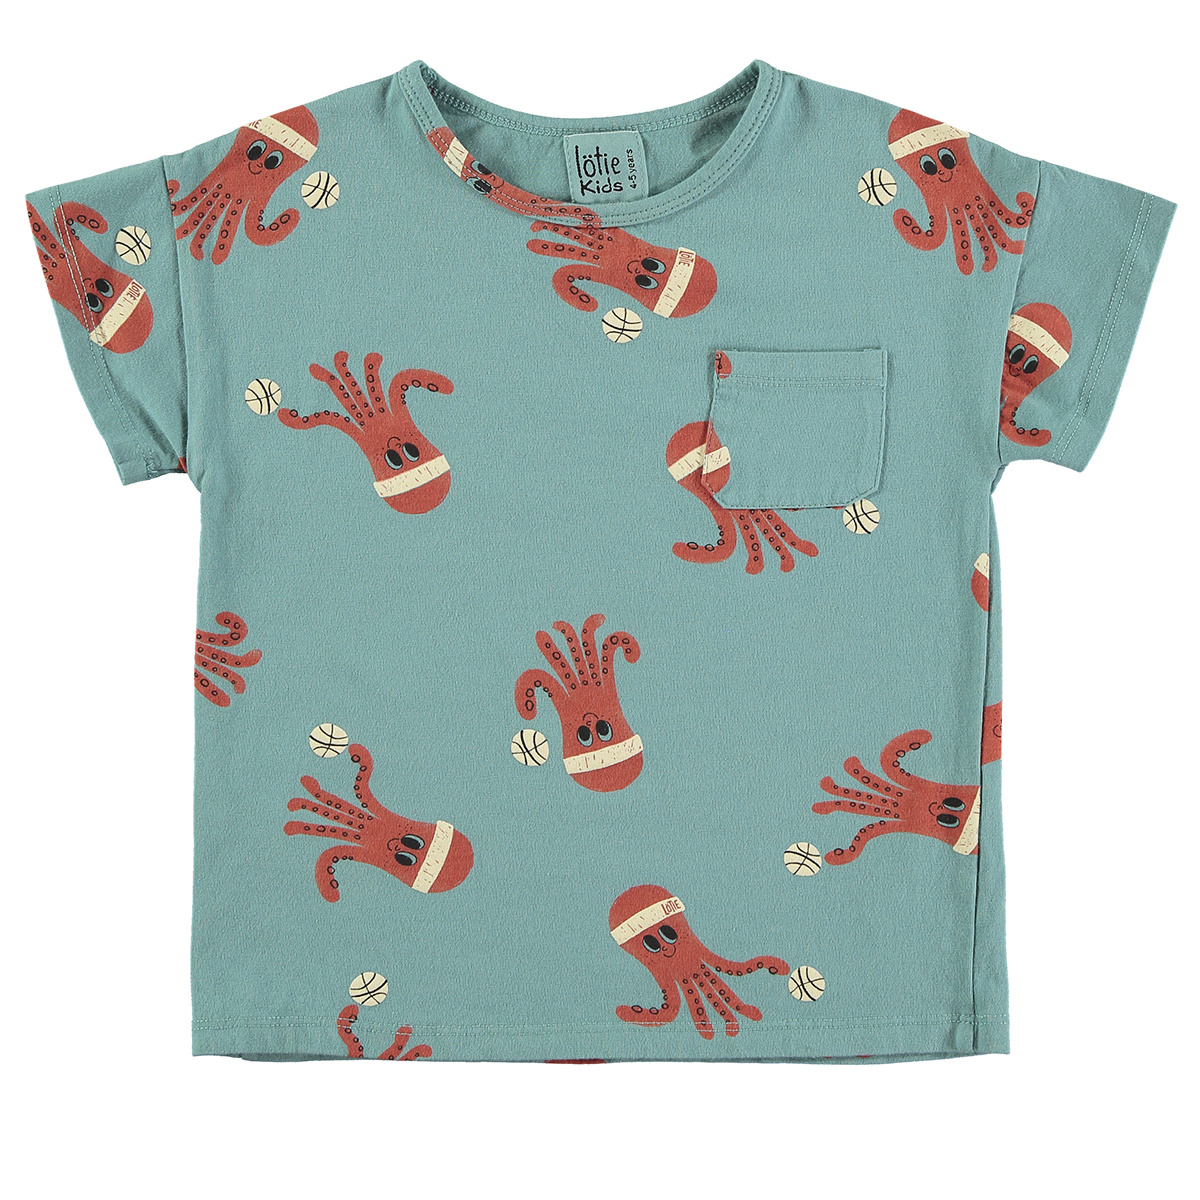 Lötie kids T-shirt Short Sleeve Octopuses | Pacific